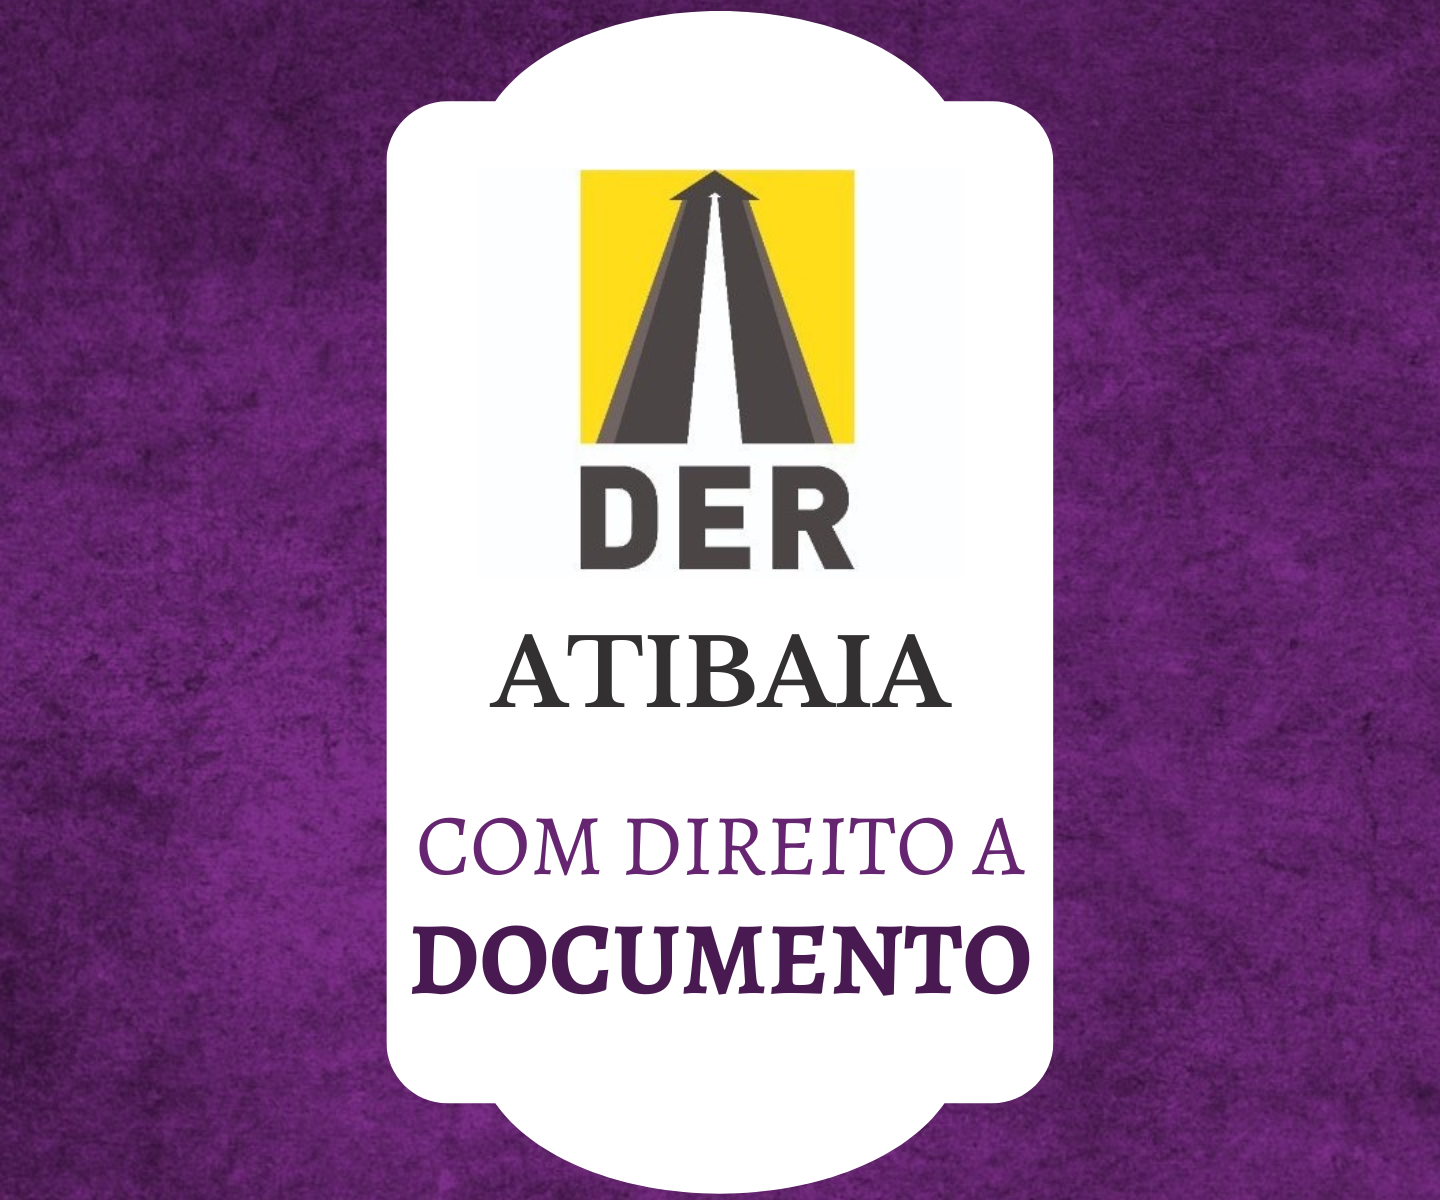 ATIBAIA/SP - Ed 288/2022 - VEÍCULO COM DIREITO A DOCUMENTO